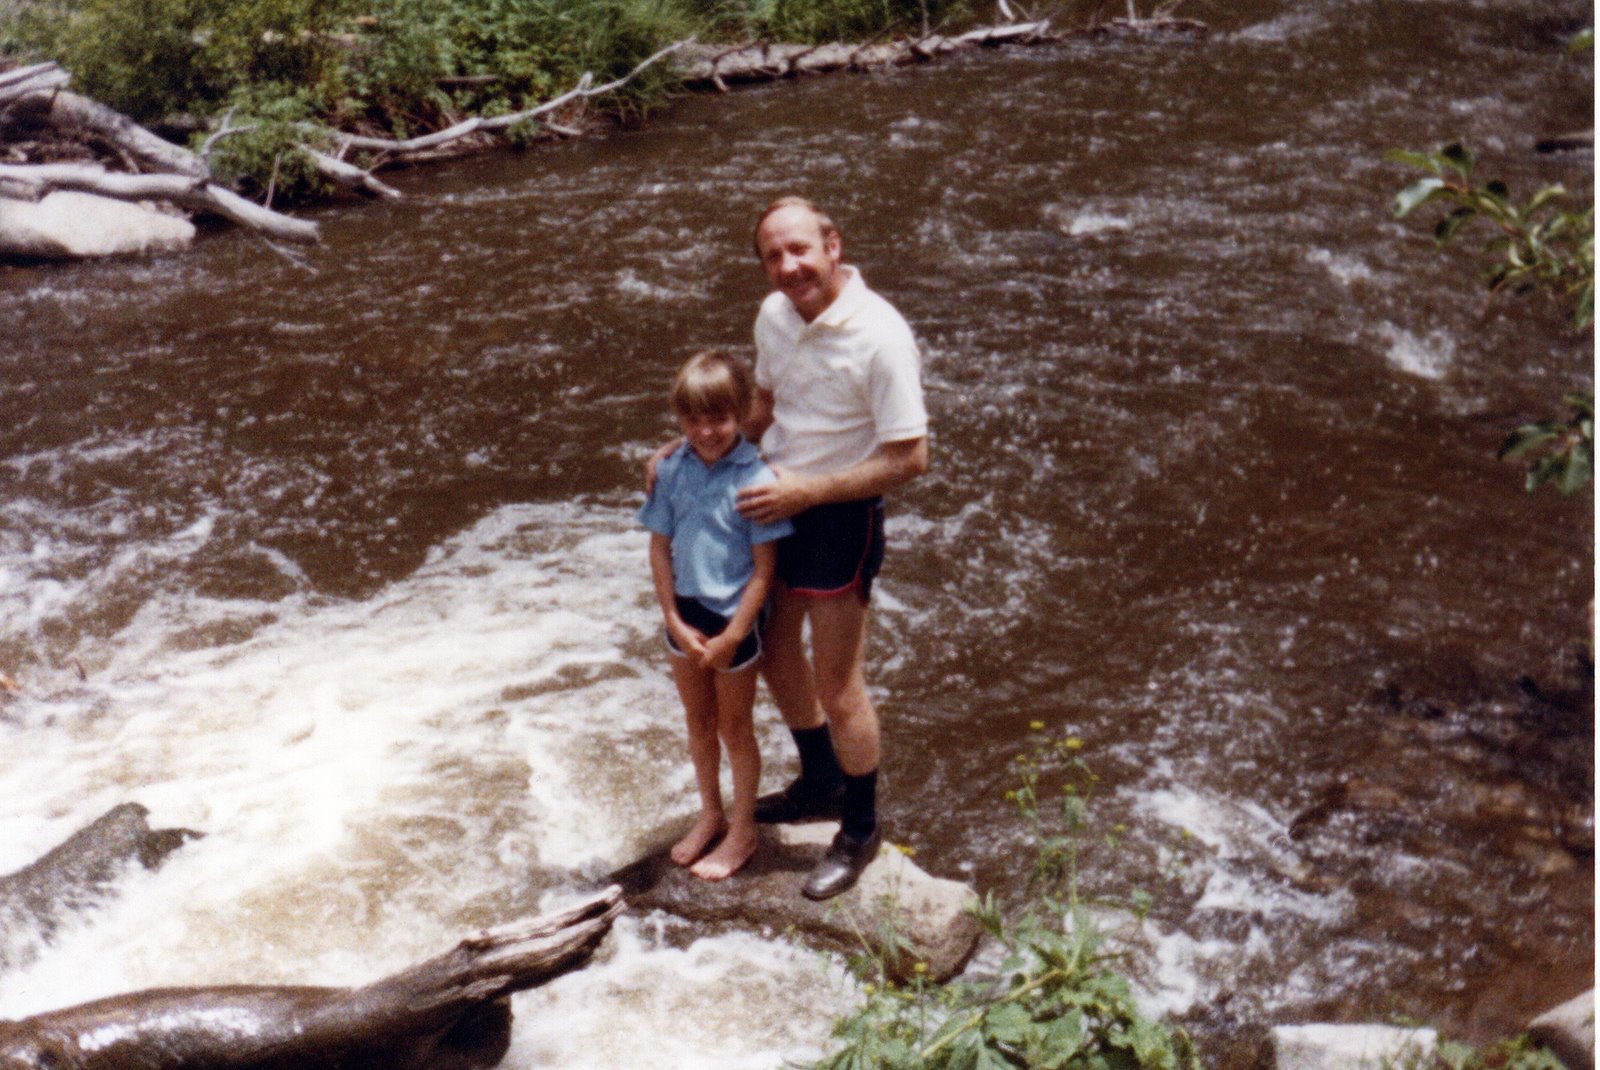 [Tod+and+Dad+at+river.jpg]